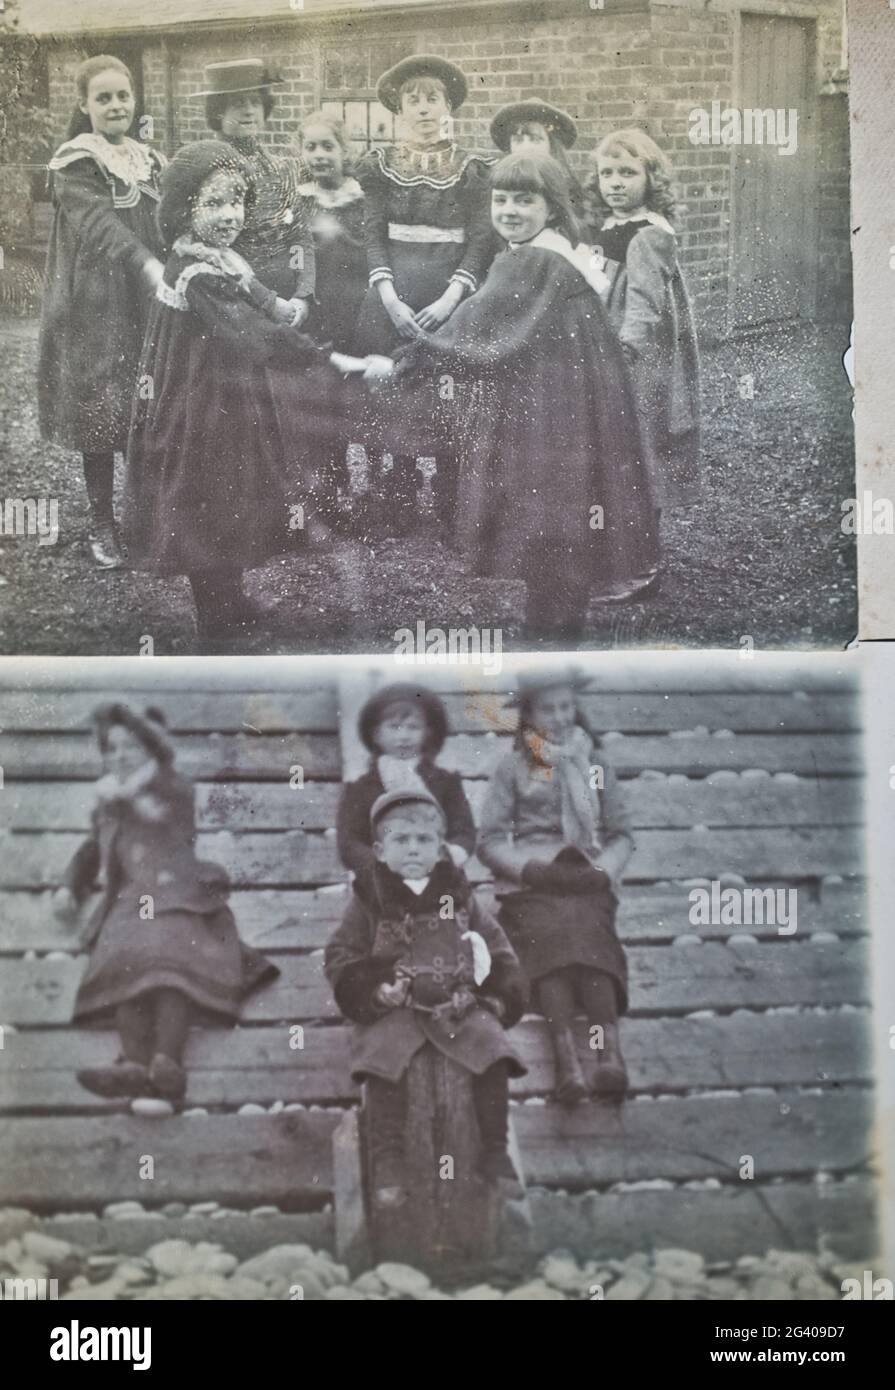 A principios del siglo 20th auténticas fotografías vintage de niños jugando y sentados juntos. Concepto de infancia, nostalgia, histórico Foto de stock